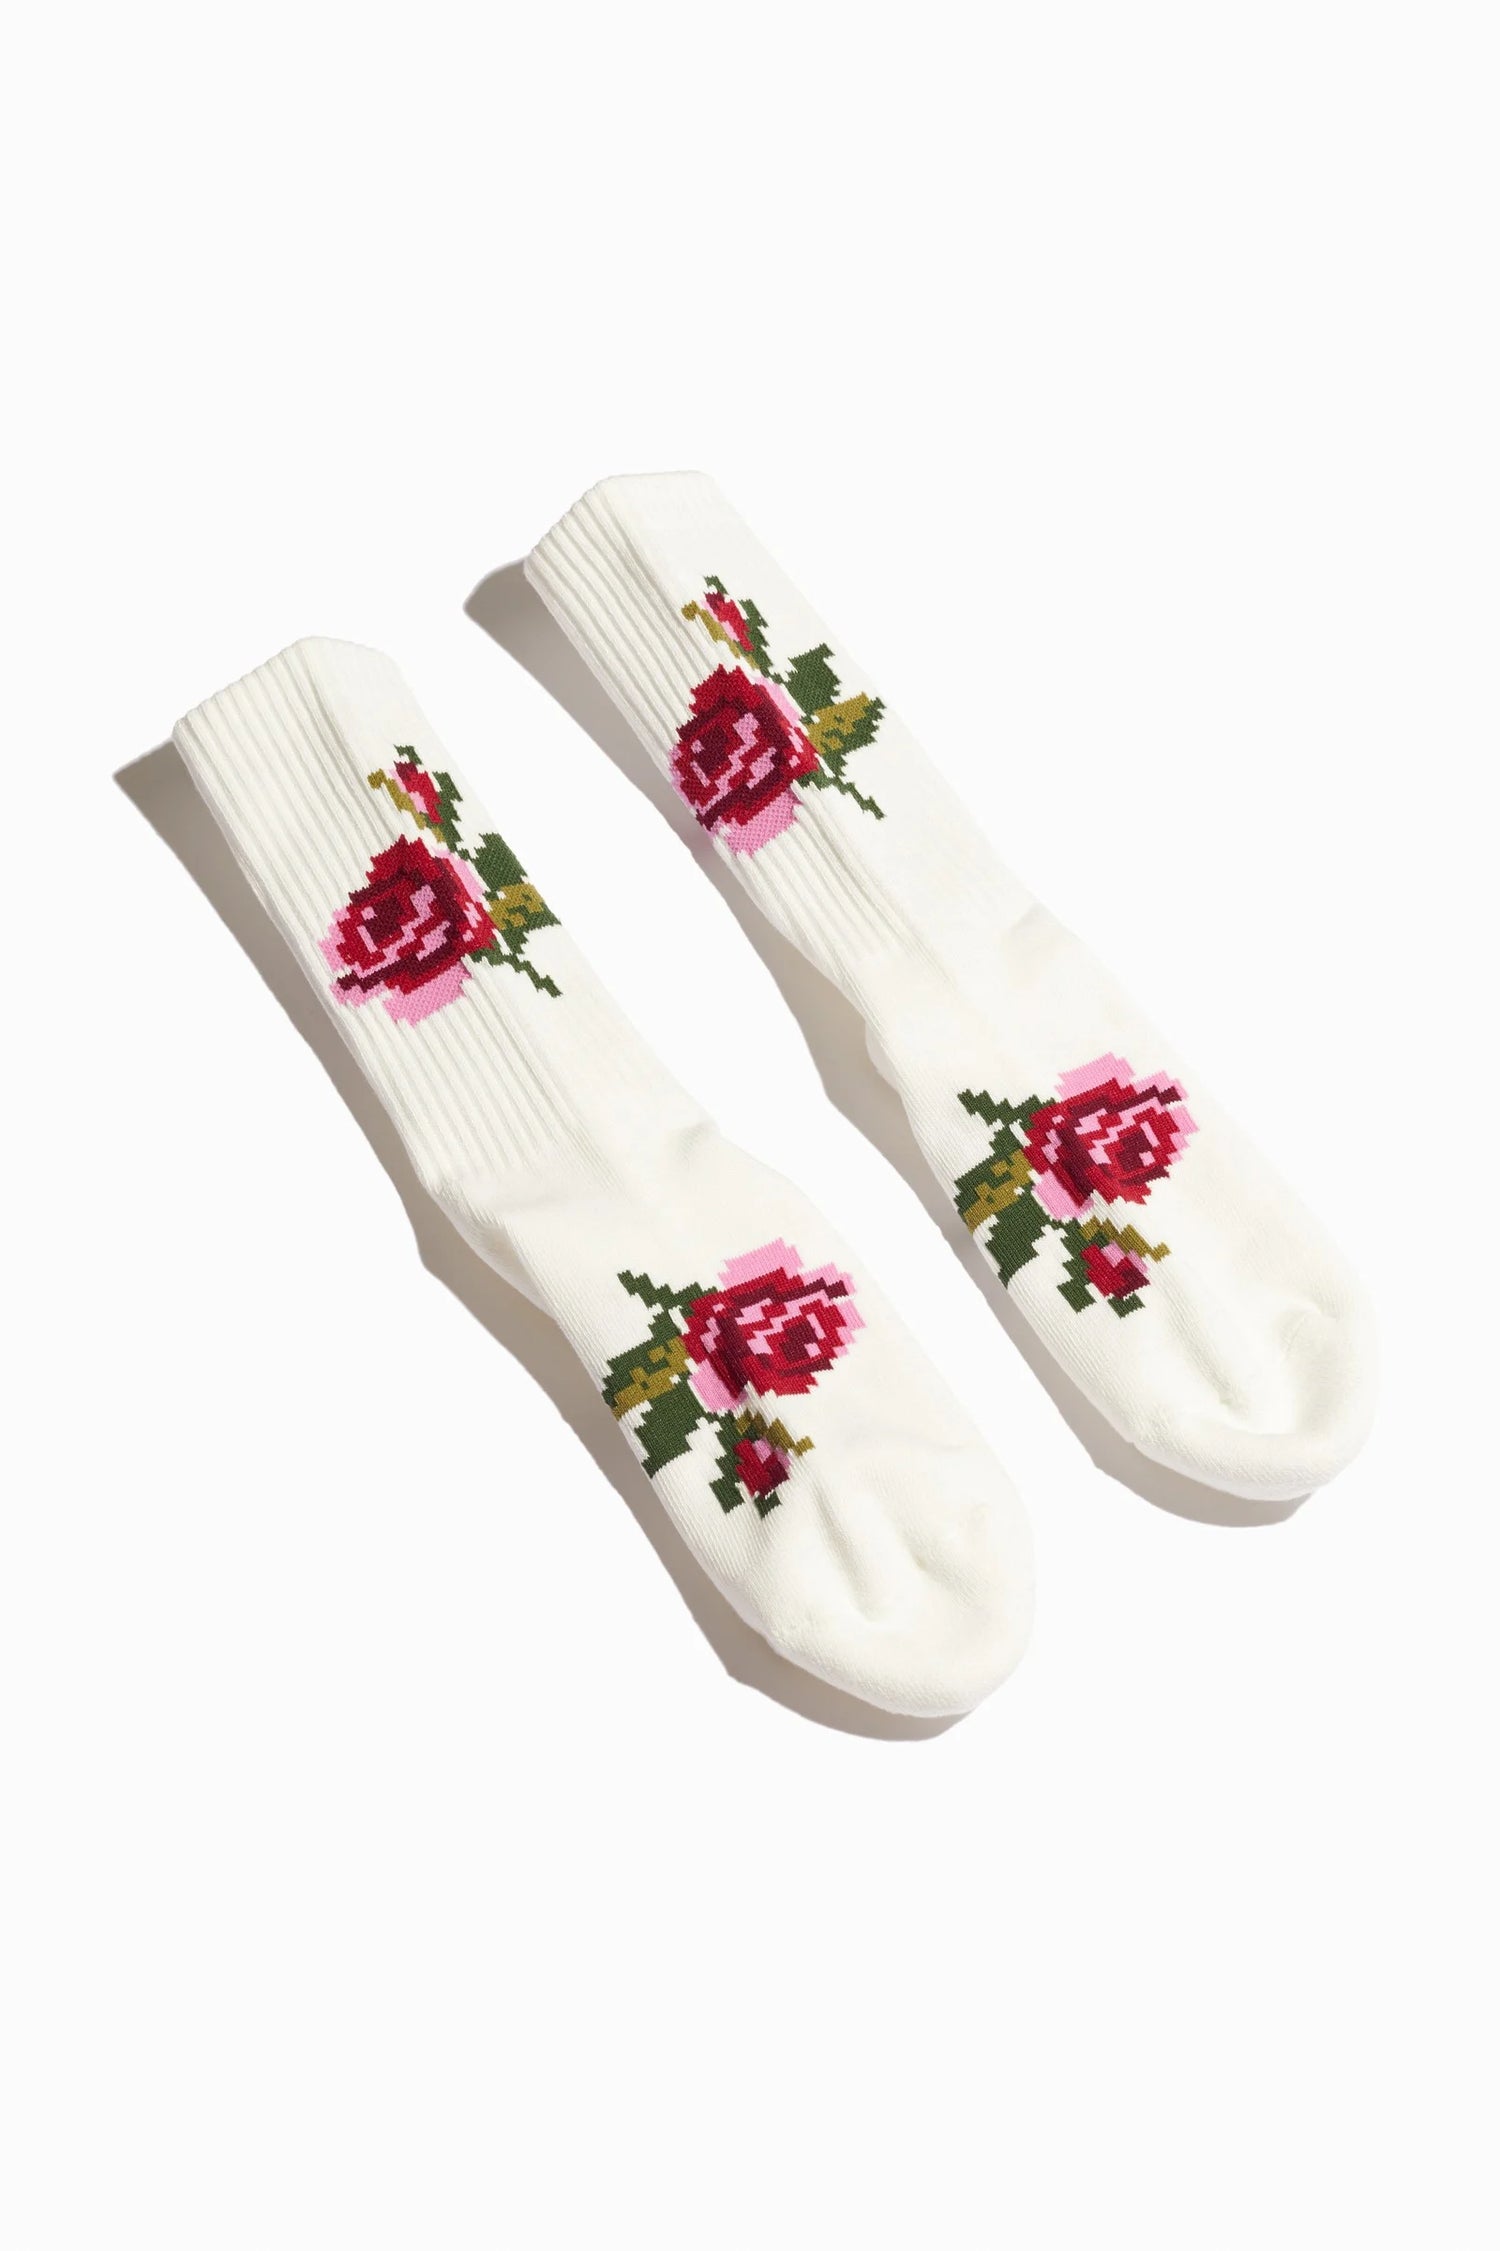 Rosebud socks